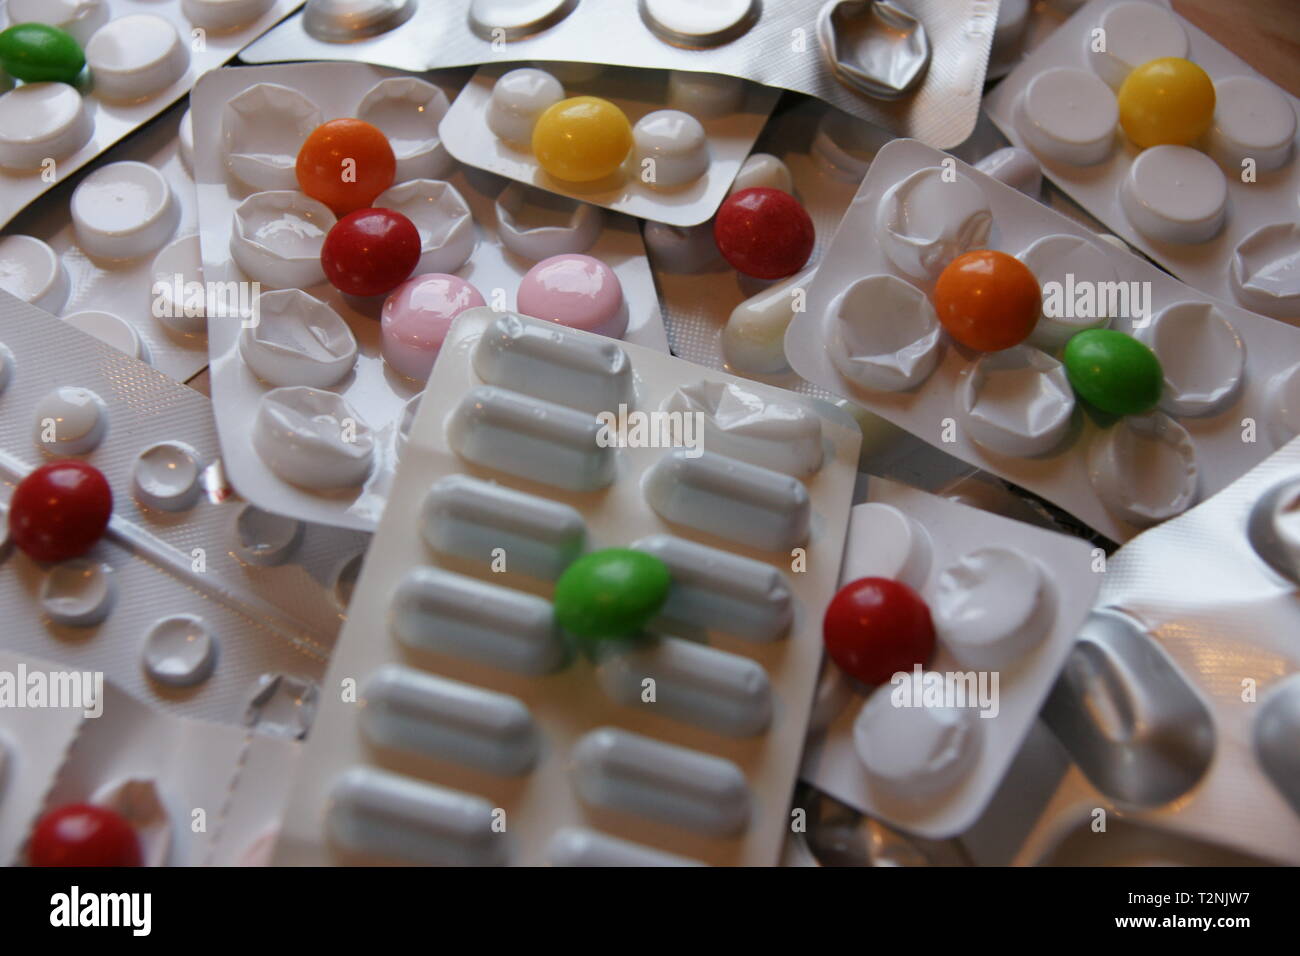 Les médicaments sur ordonnance et les médicaments, des pharmacies, pharmacie Banque D'Images